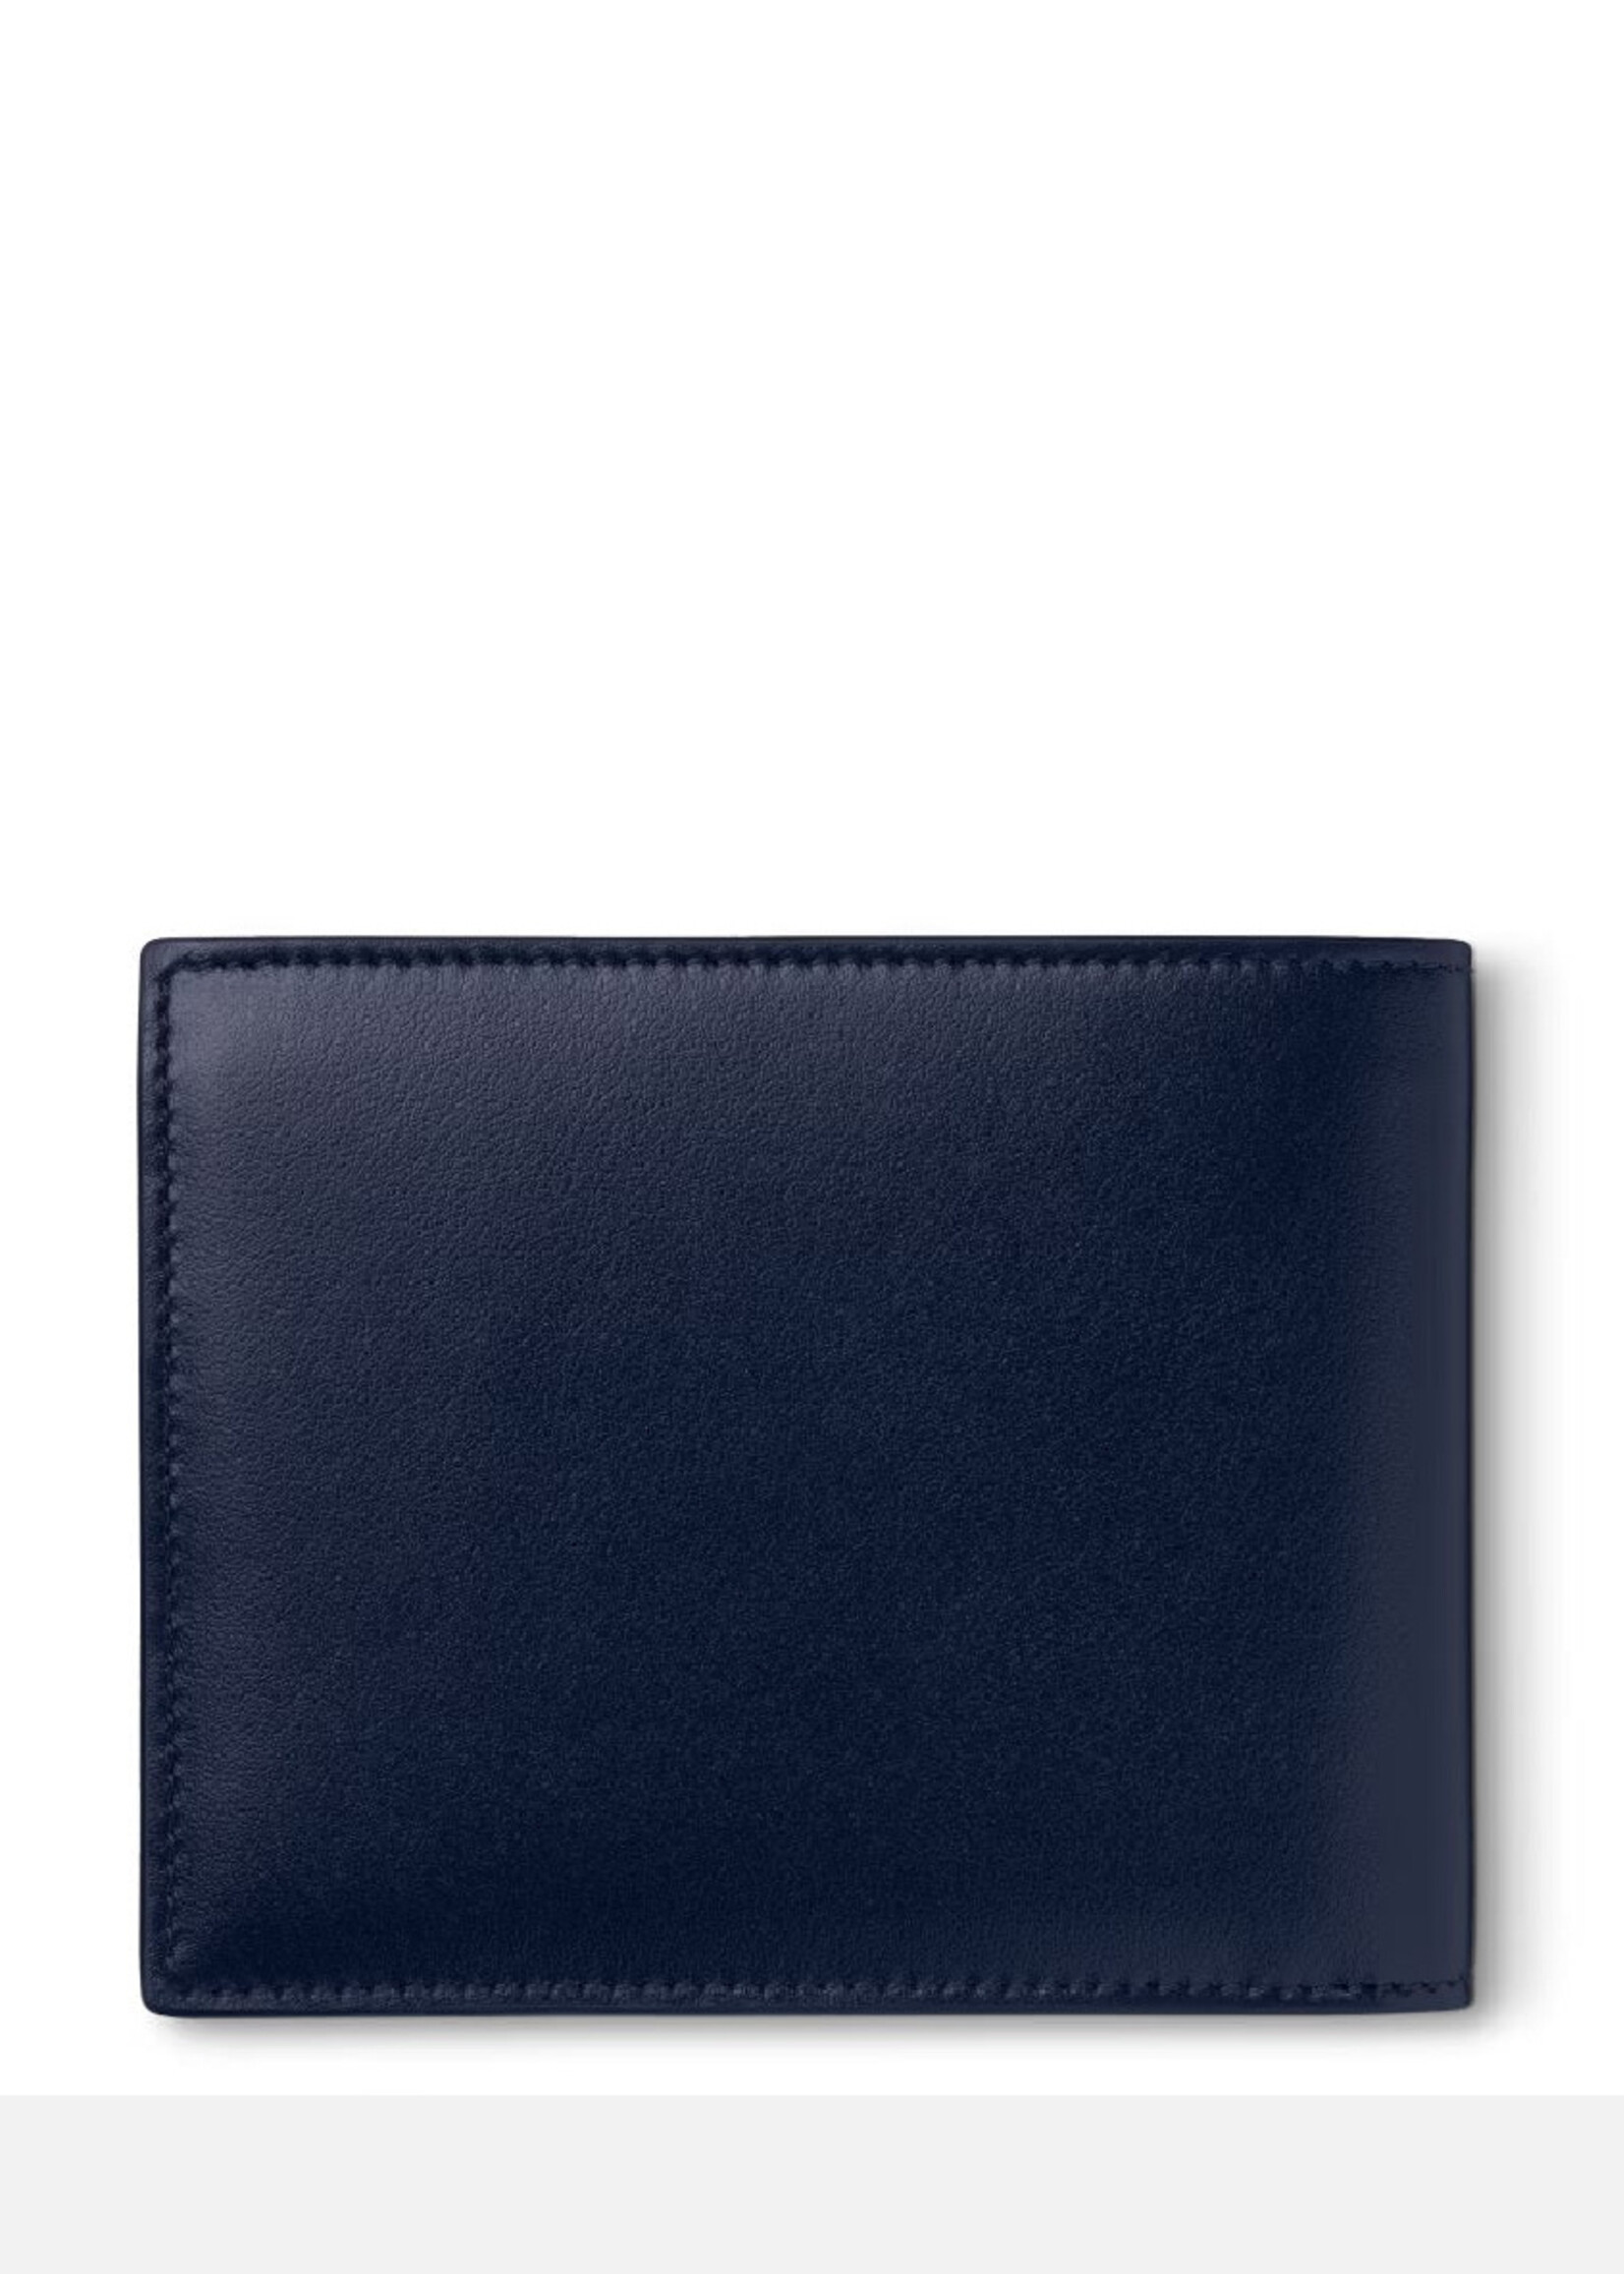 MONTBLANC Meisterstück Wallet 6cc ink blue